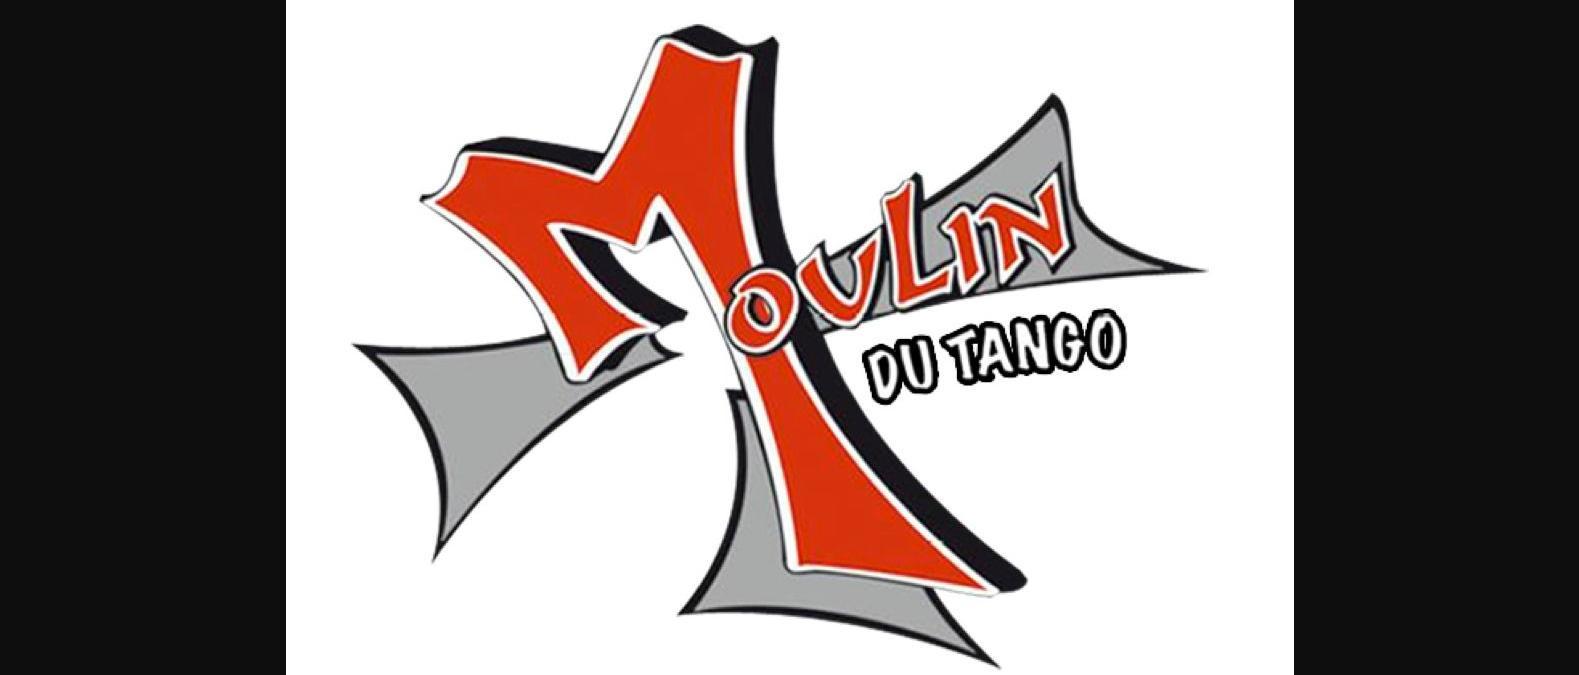 Club Boite de nuit Le Moulin du Tango - Saint-Gilles les Bains - La Réunion